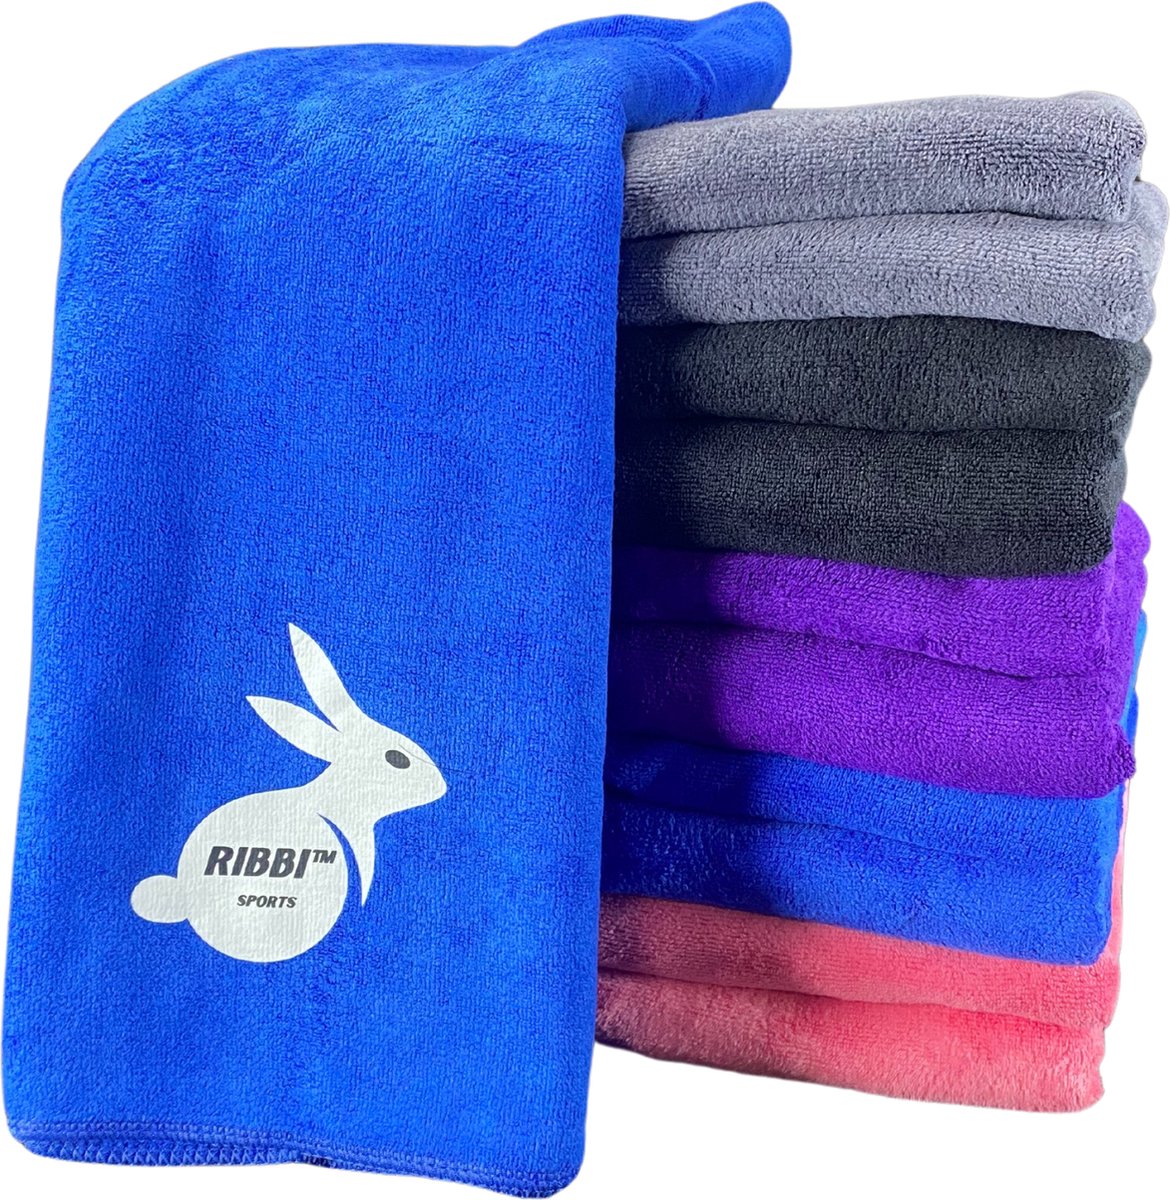 Ribbi - Premium microvezel handdoek, inclusief opbergtas – geschikt voor fitness & sport, strand, yoga, badhanddoek, sauna en meer -40x100cm - Blauw